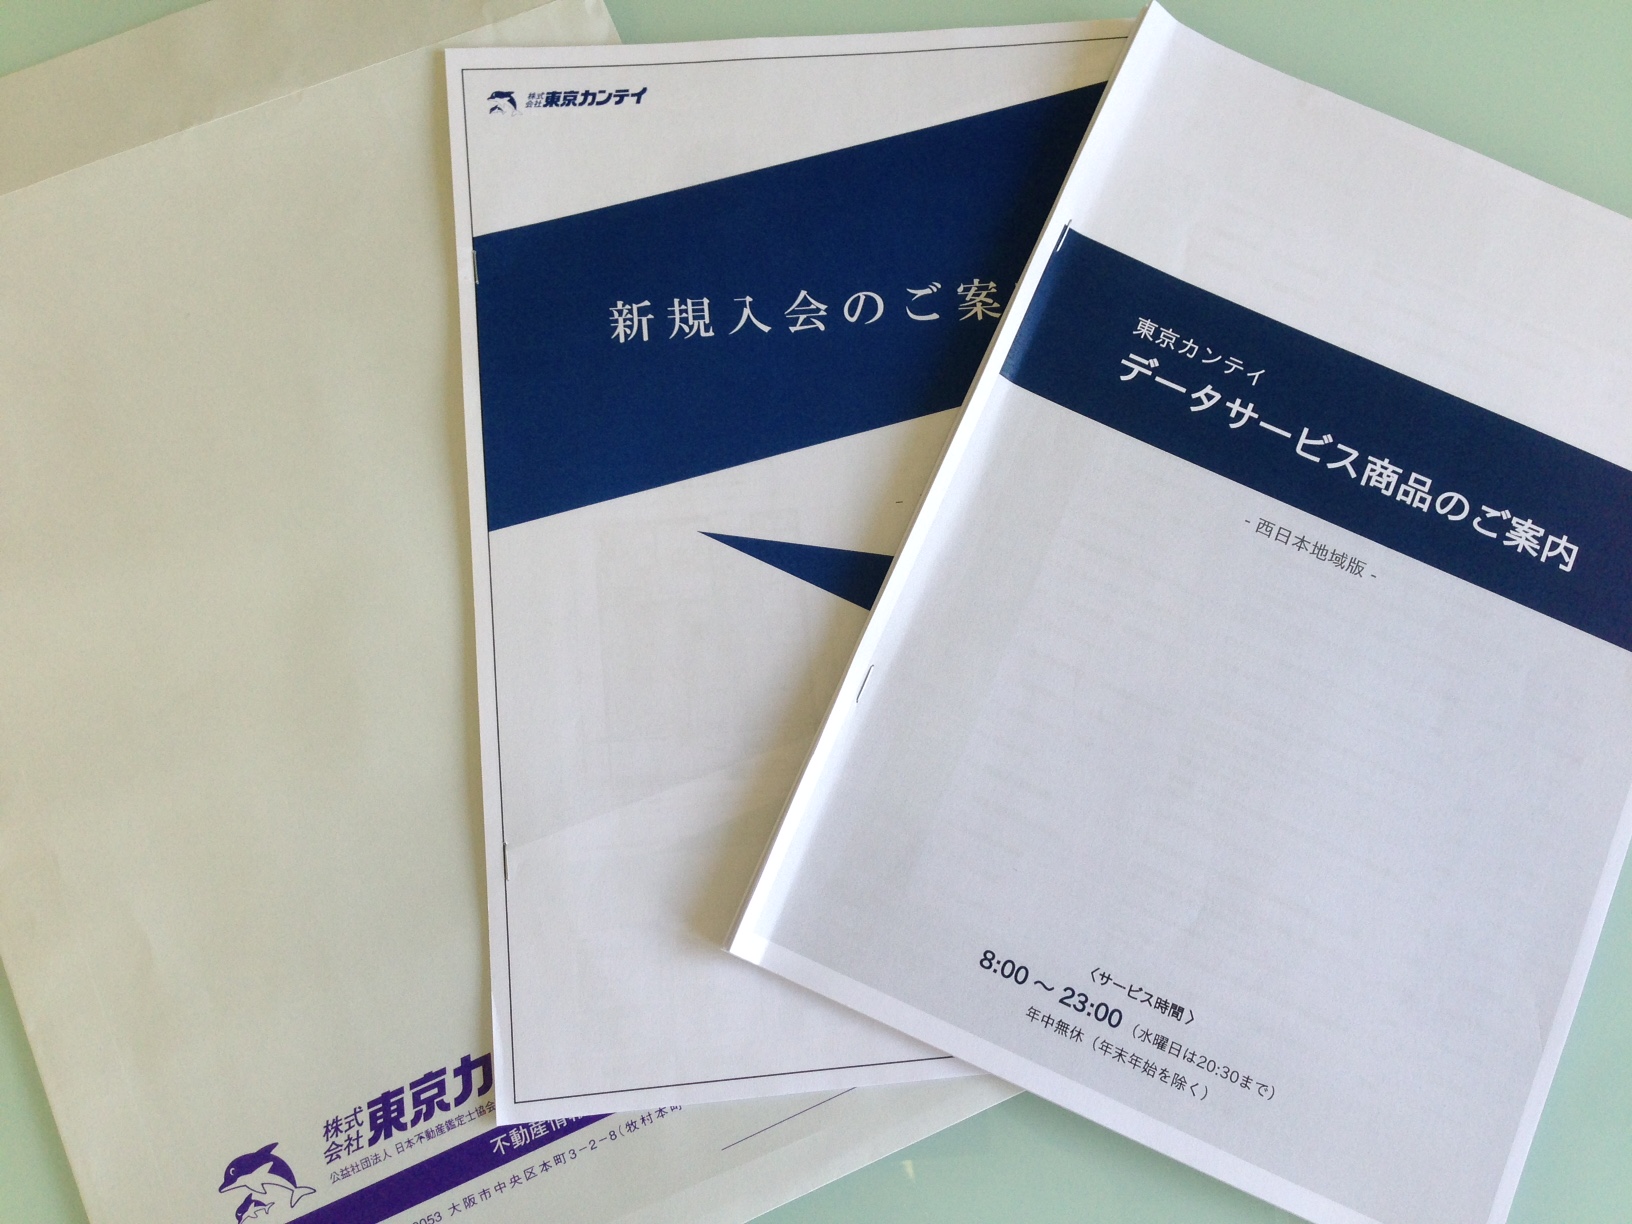 東京カンテイ新規入会方法及び、データサービス商品の詳しい説明